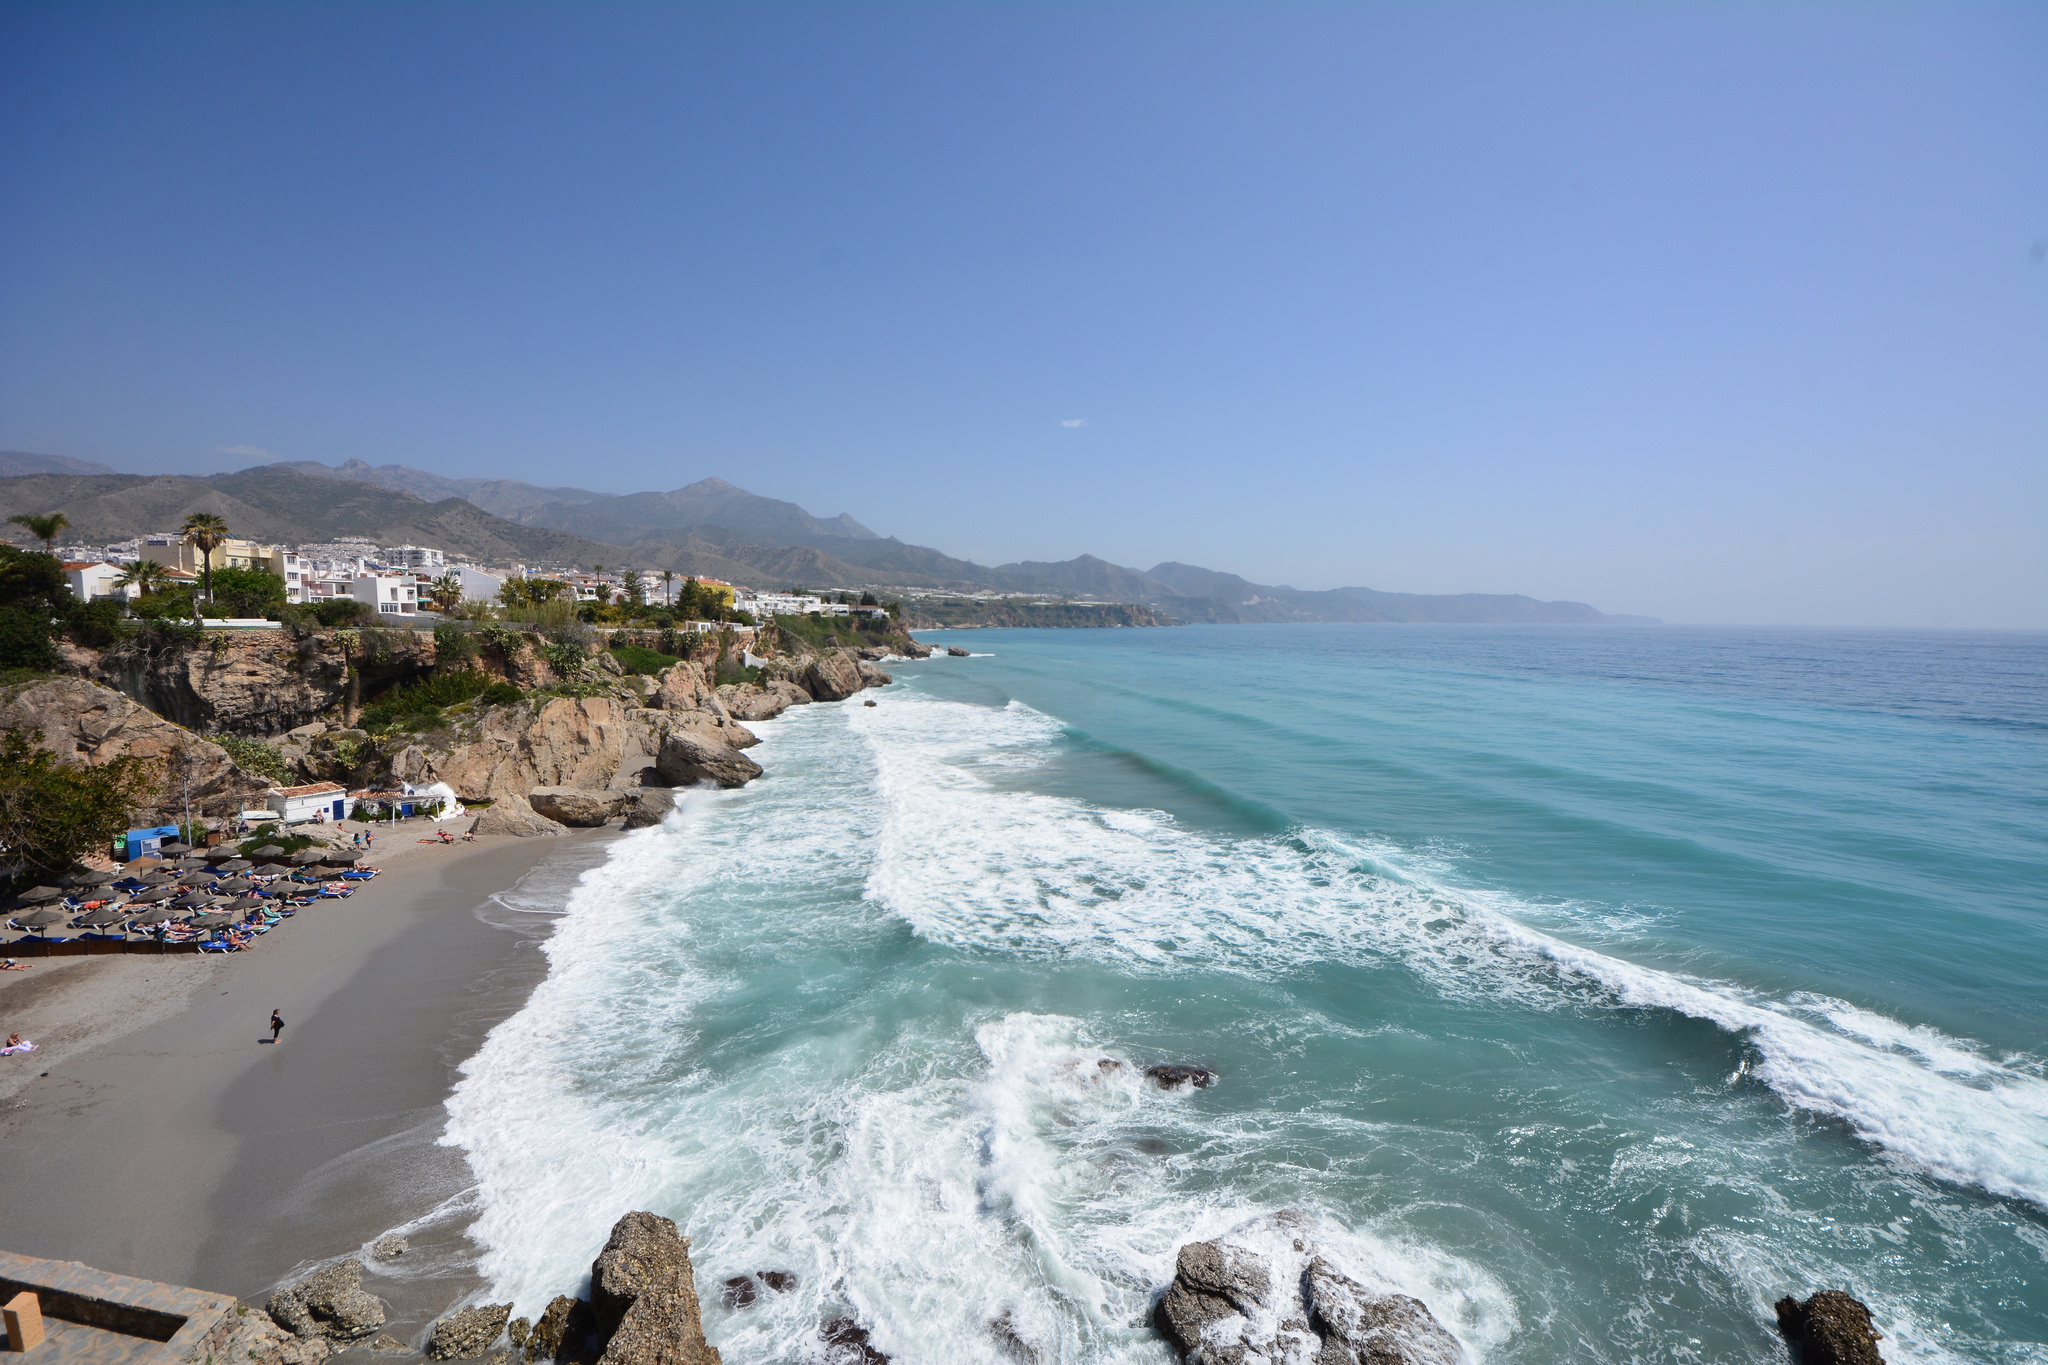 Коста дель соль, испания: погода, курорты, достопримечательности